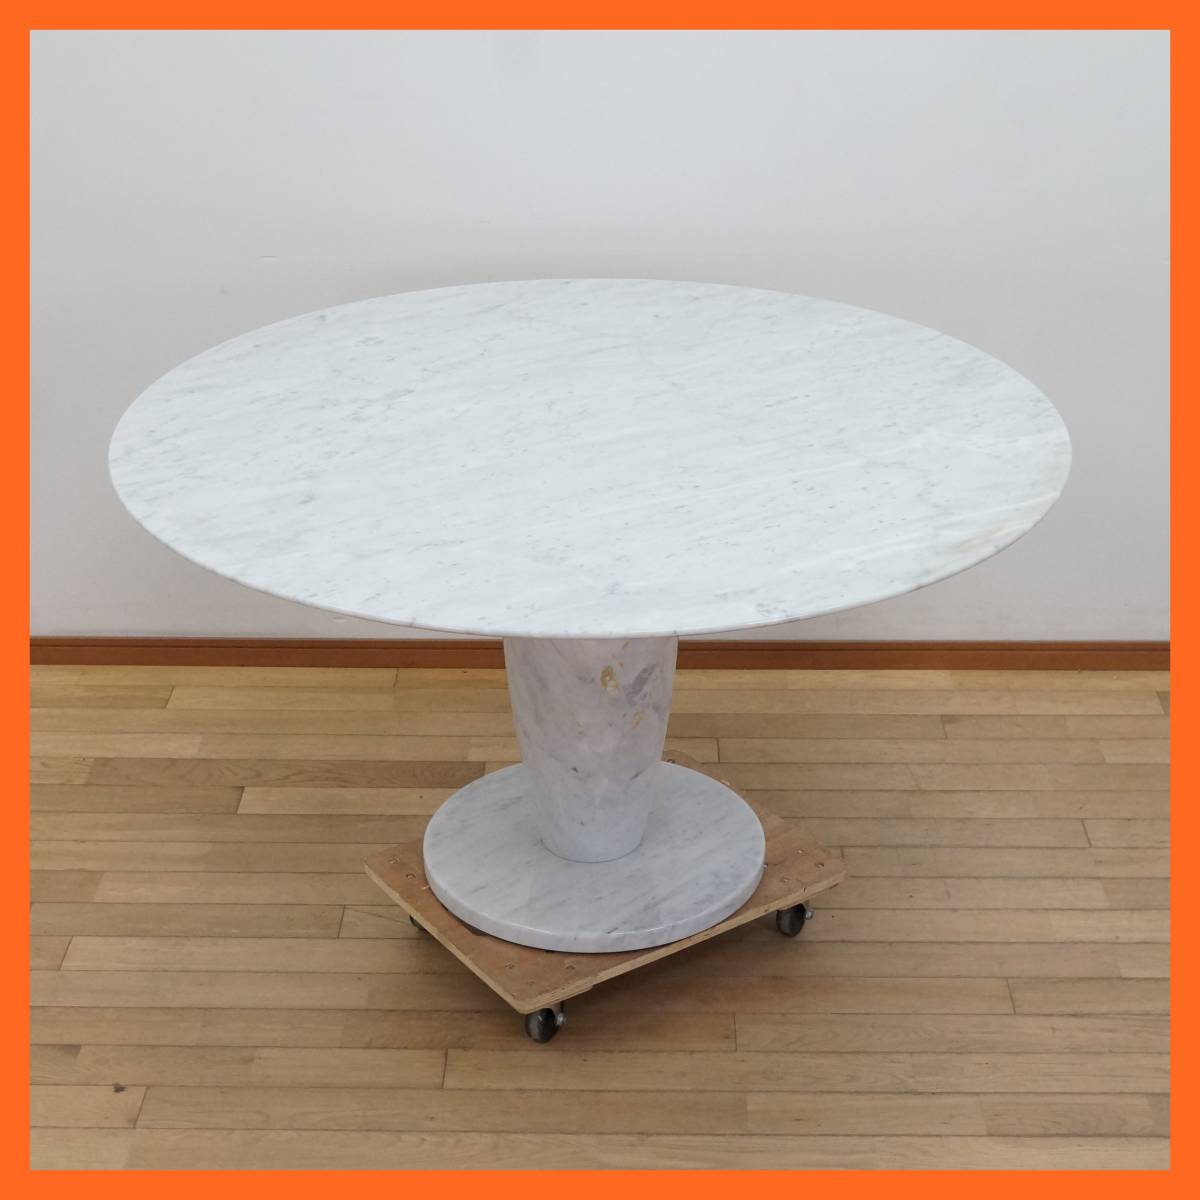 東ハ:【大理石】テーブル 幅約130㎝ 高さ約69㎝ 天板厚さ約20㎜ ダイニングテーブル 食卓 リビングテーブル モダンインテリアの画像1